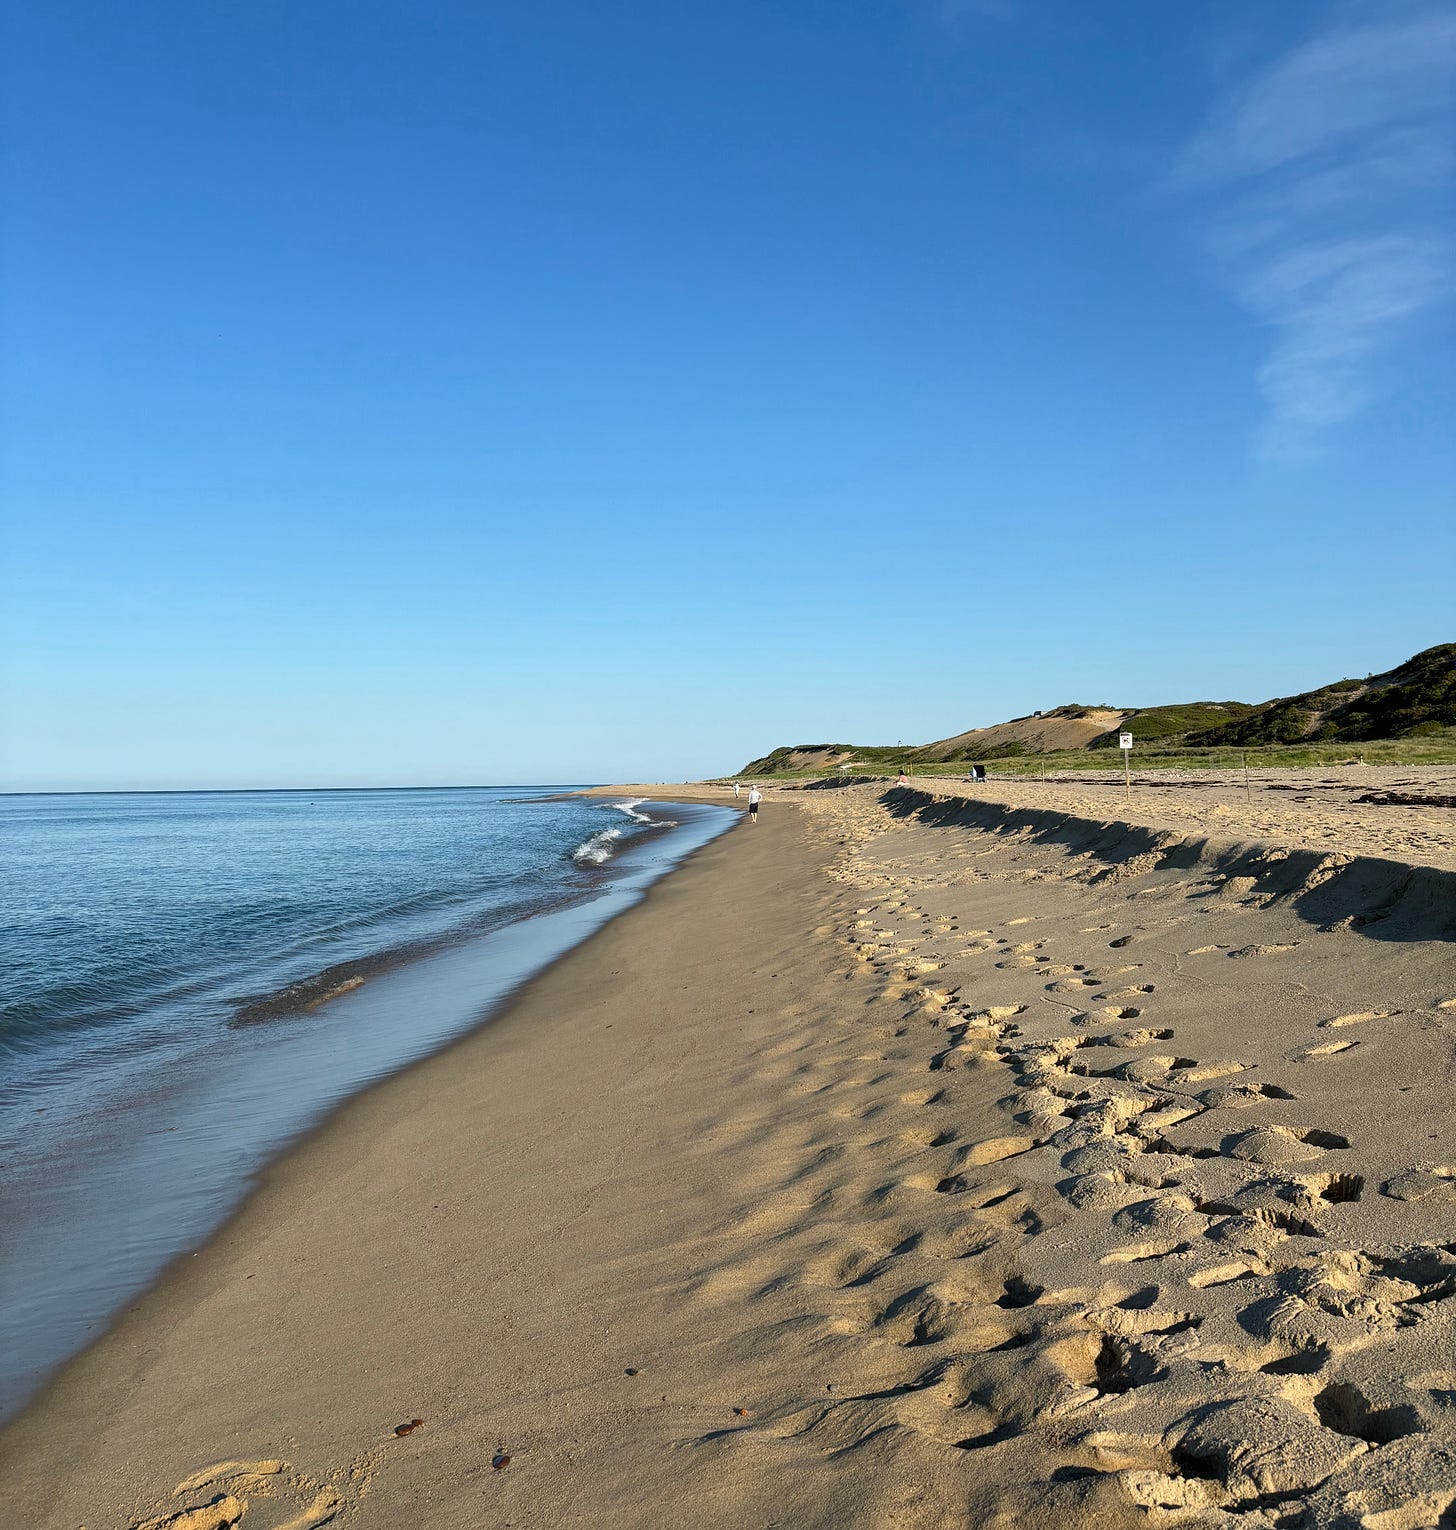 A photograph of a beach on Cape Cod